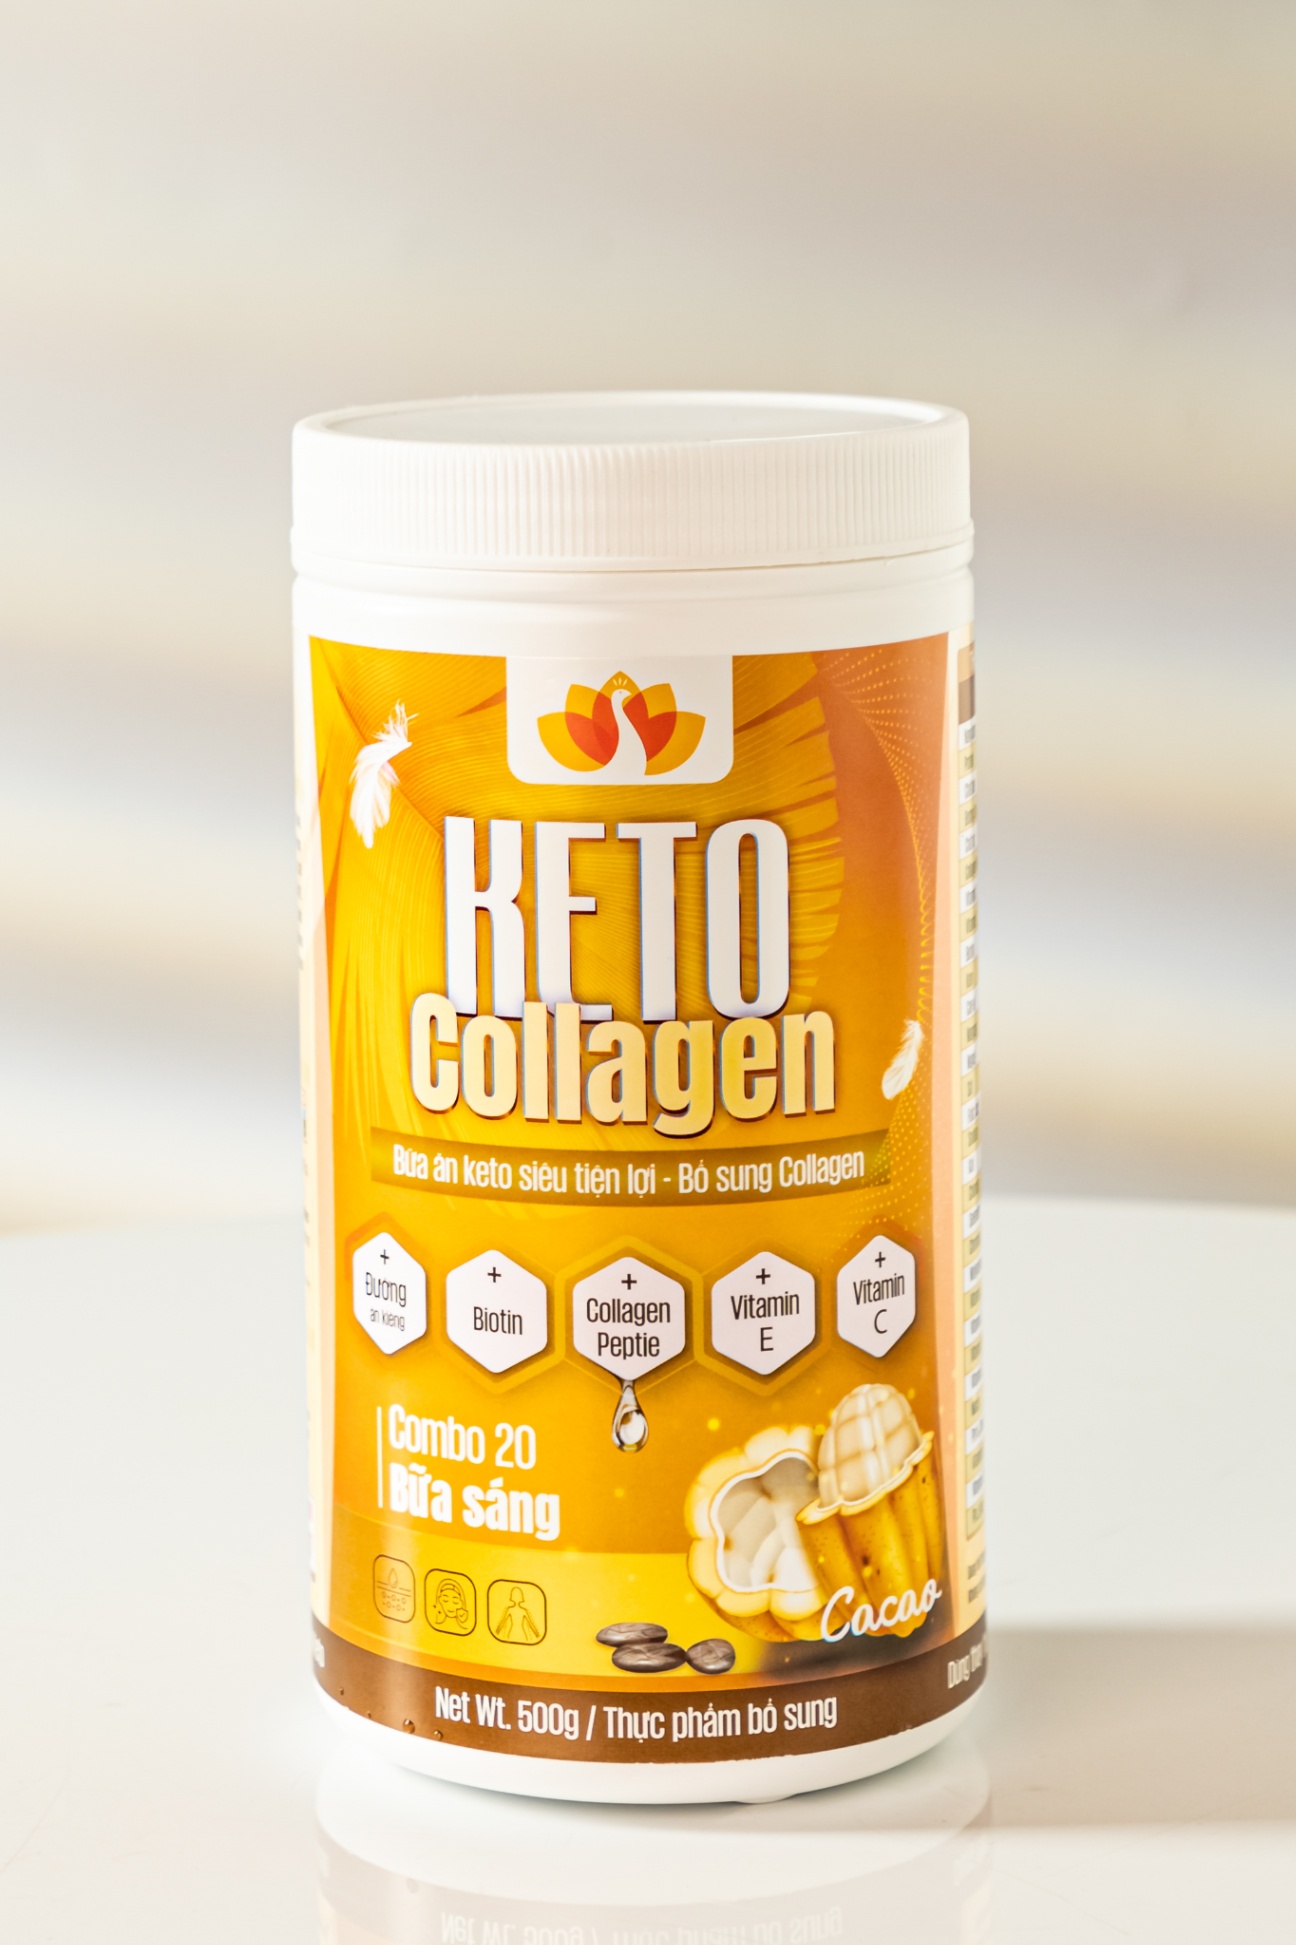 Tác động của keto collagen đến sức khỏe tổng quát như thế nào?
